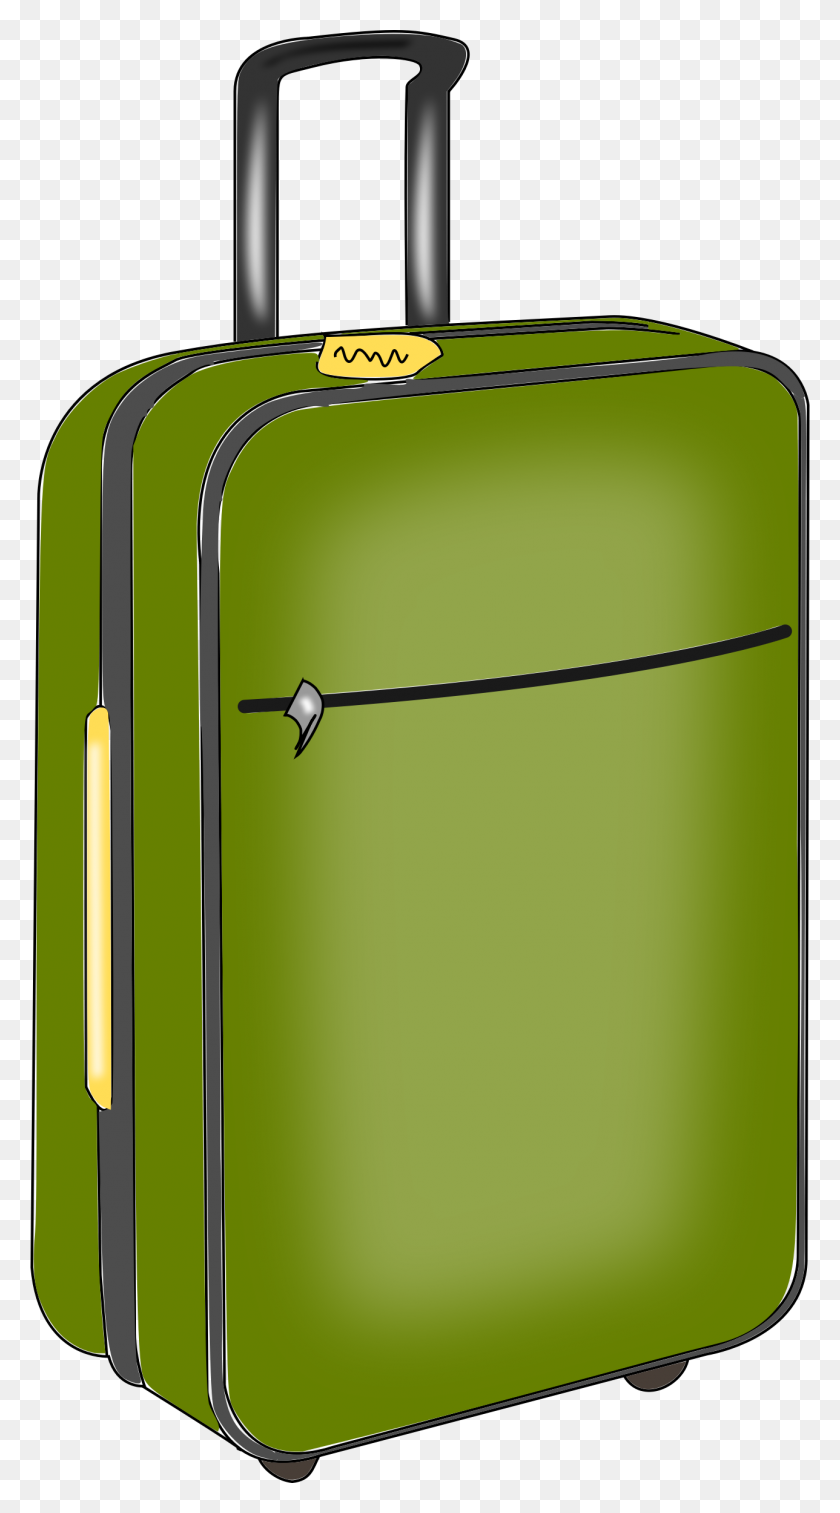 1288x2400 Clipart - Open Suitcase Clipart